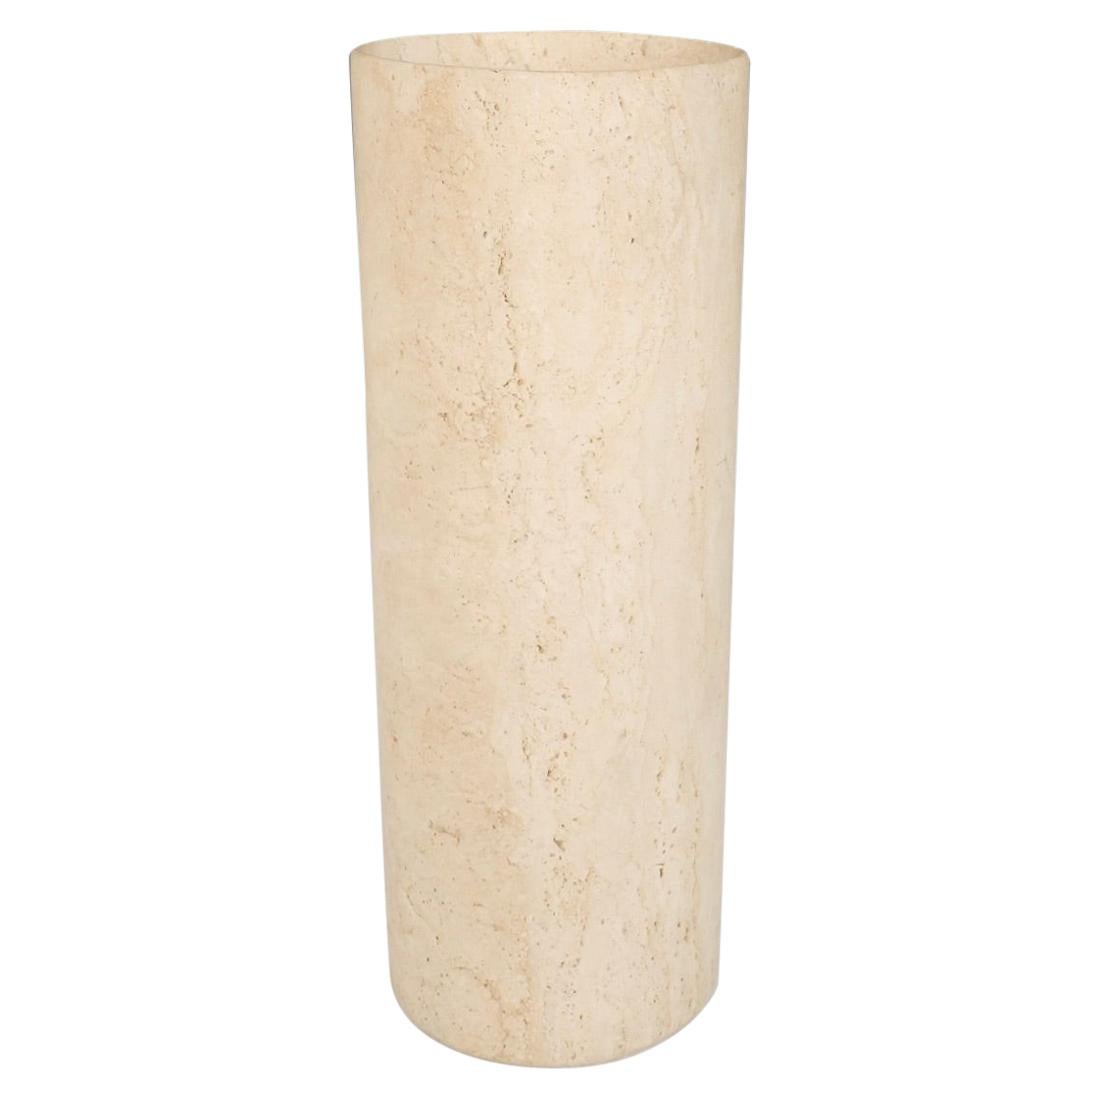 Vase de sol ou pot de jardinière cylindrique en marbre travertin